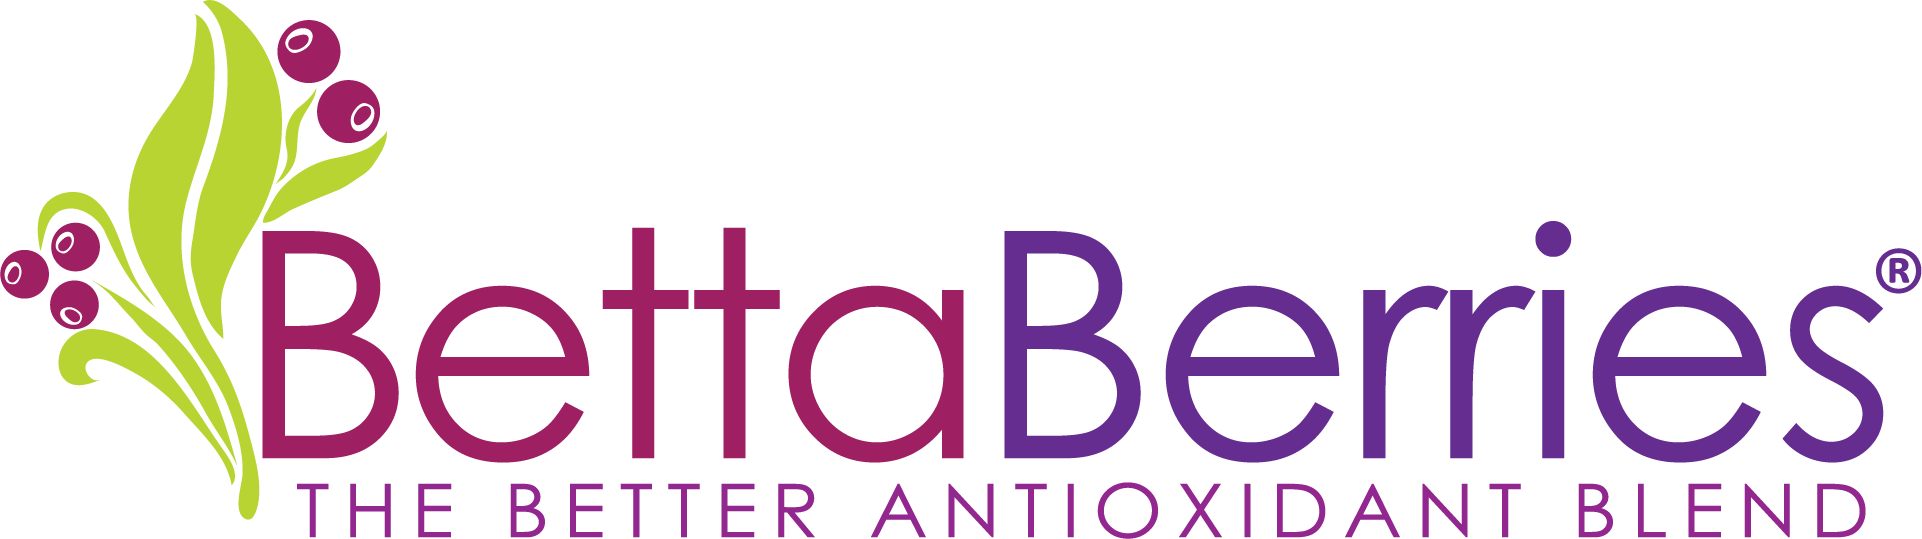 Bettaberries Logo